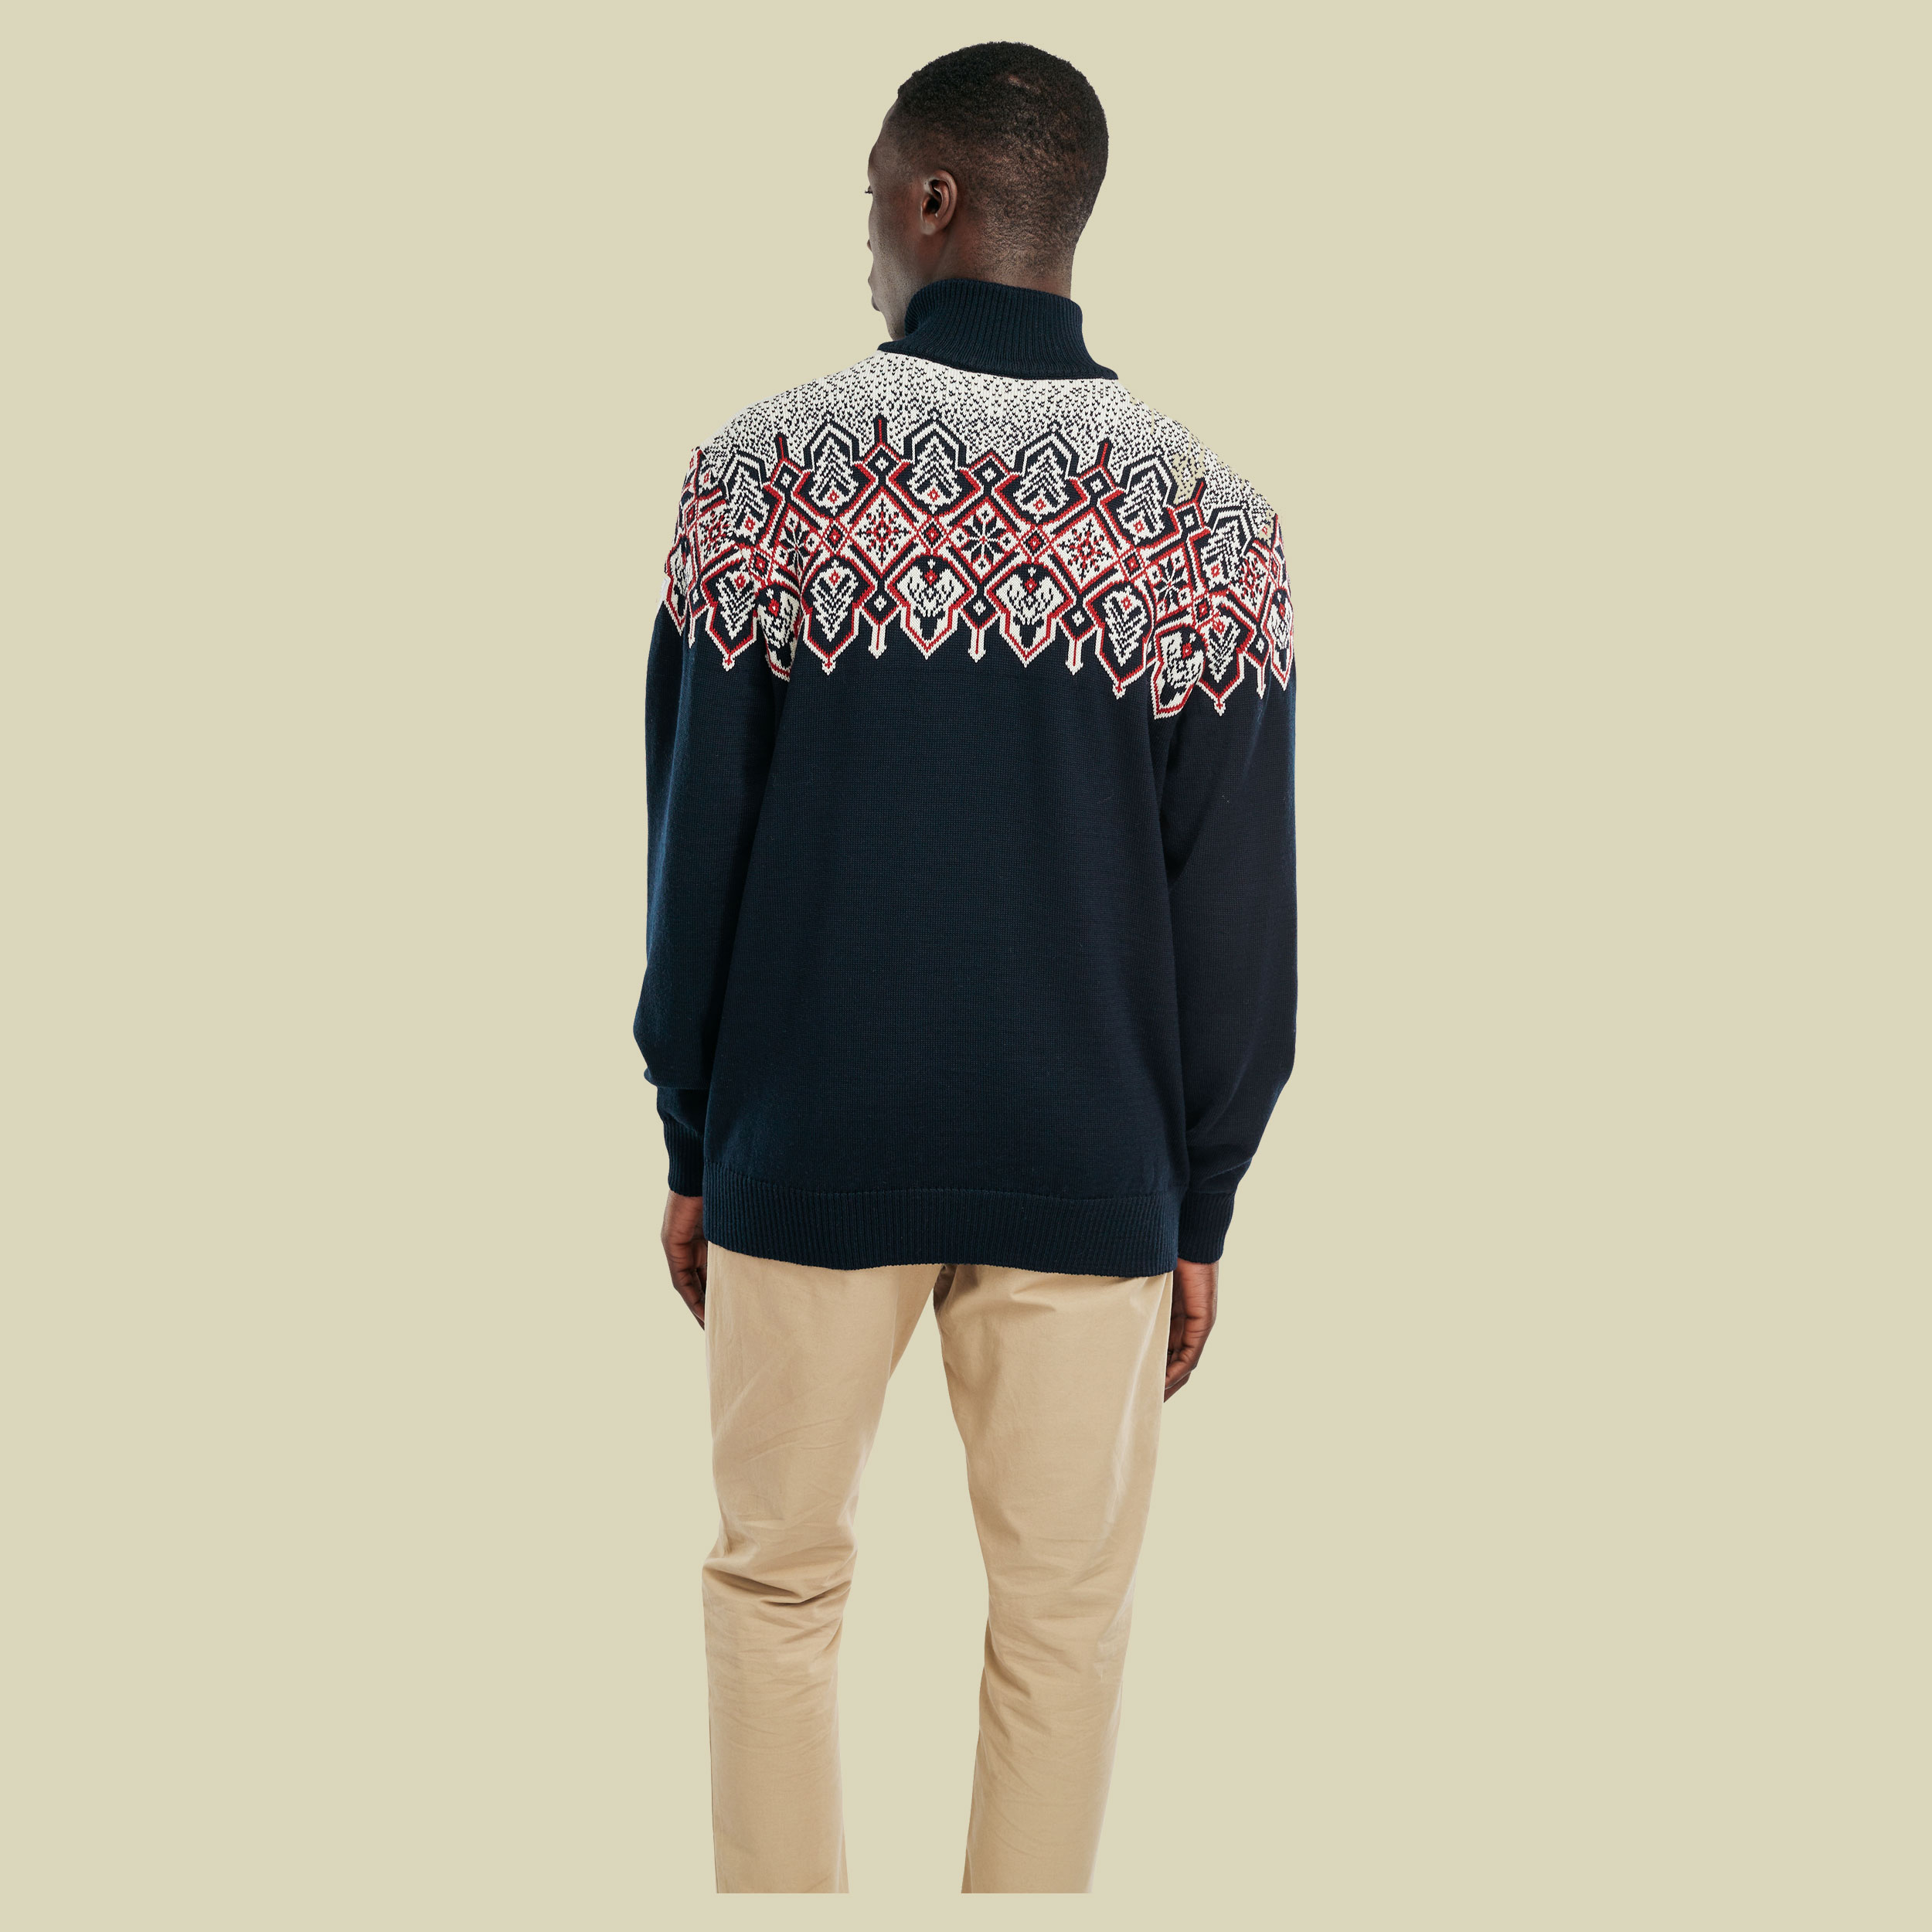 Winterland Sweater Men Größe S Farbe navy-off white-raspberry